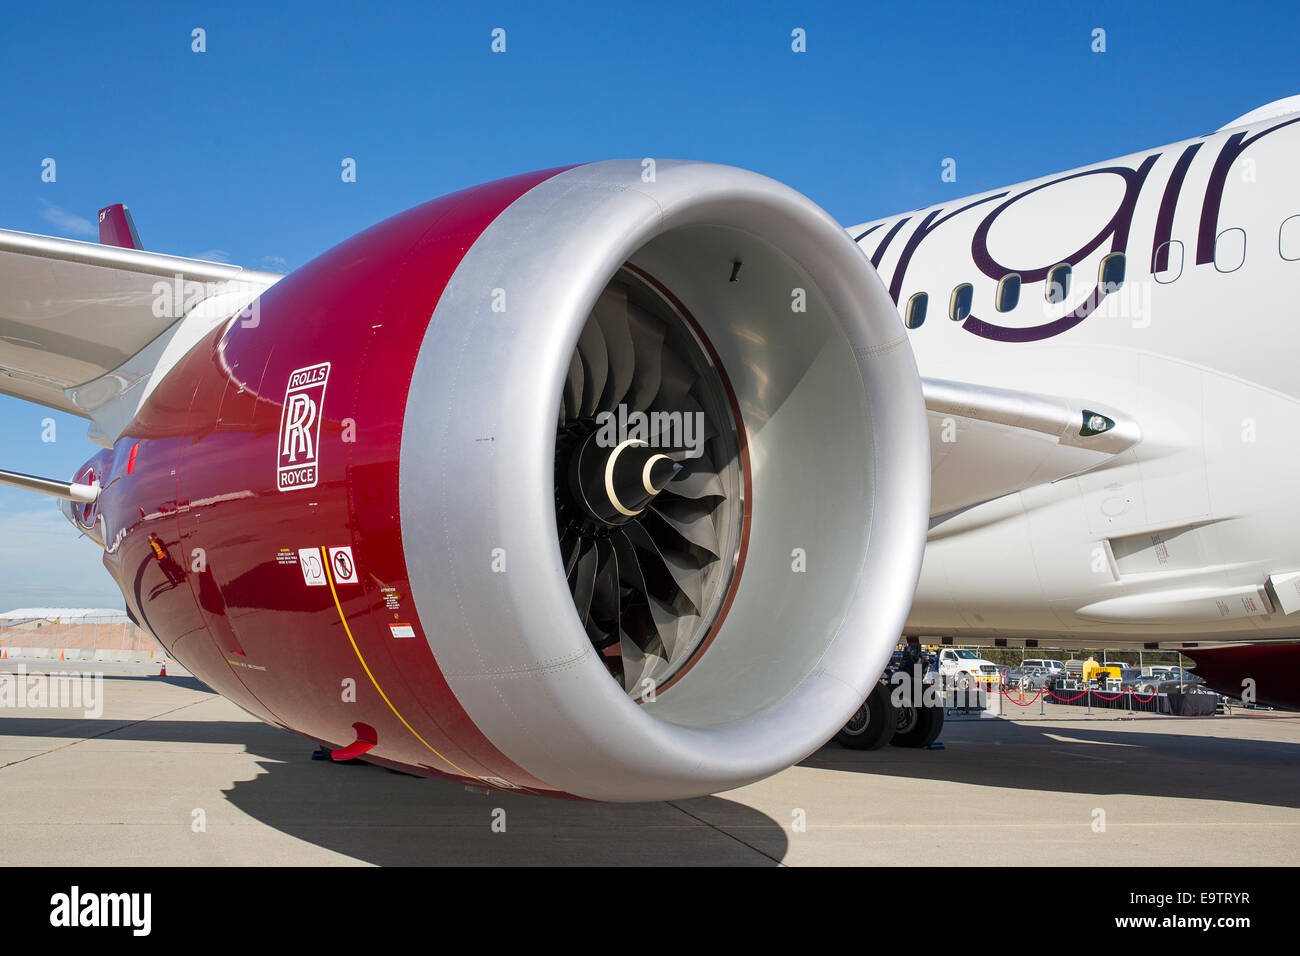 Une Rolls Royce Trent 1000 turboréacteur monté sur un Boeing 787 Dreamliner pour Virgin Atlantic. Banque D'Images